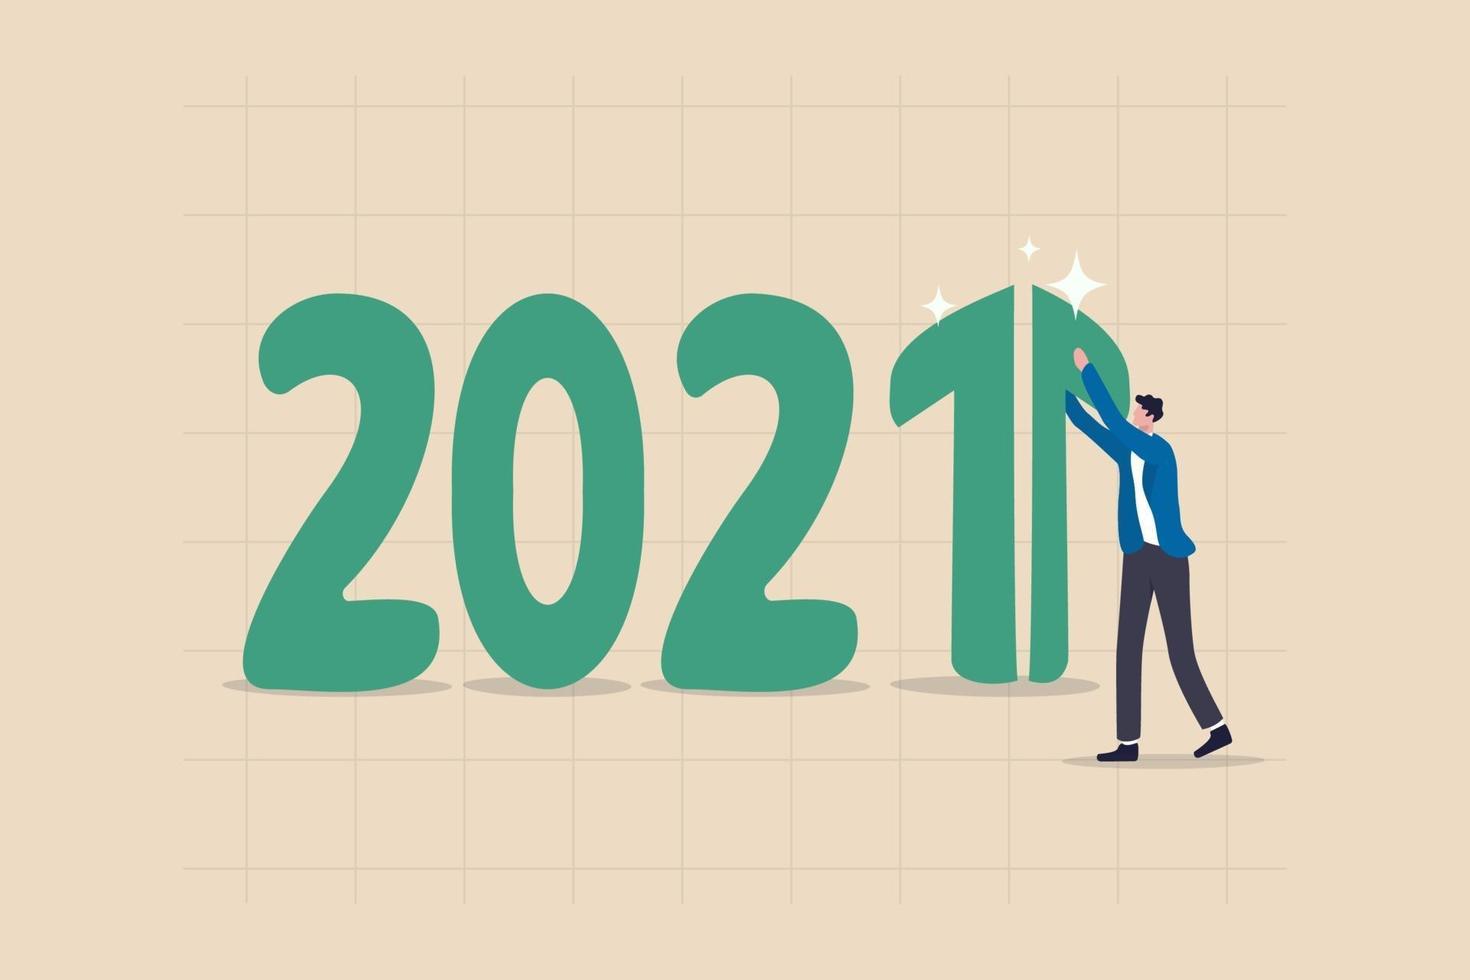 Jahr 2021 wirtschaftliche Erholung mit einem grün ansteigenden Pfeil auf Nummer 1 vektor